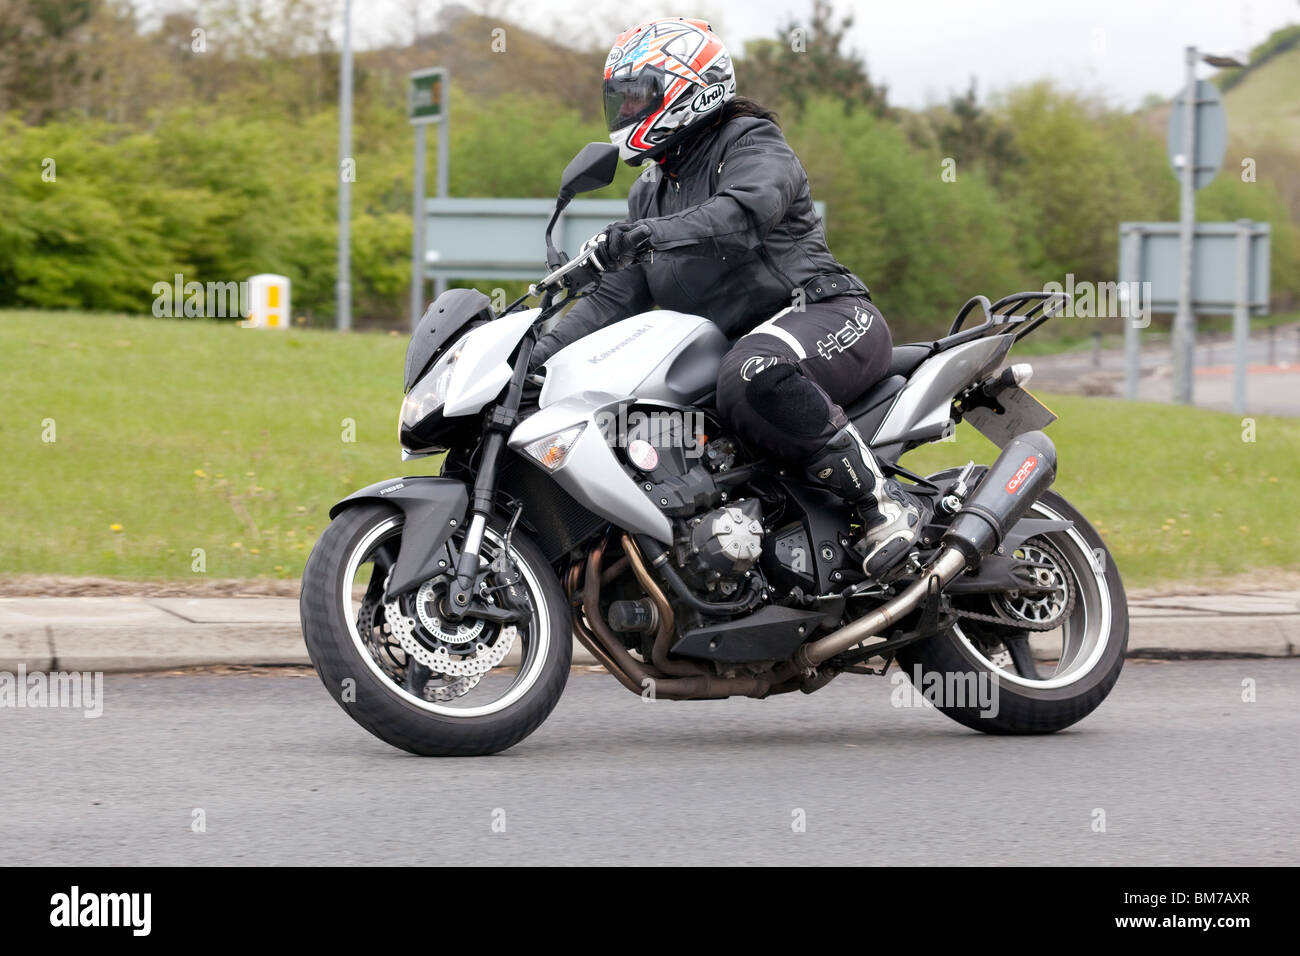 Traffic motorbike motorcyclist on a roundabout UK Stock Photo